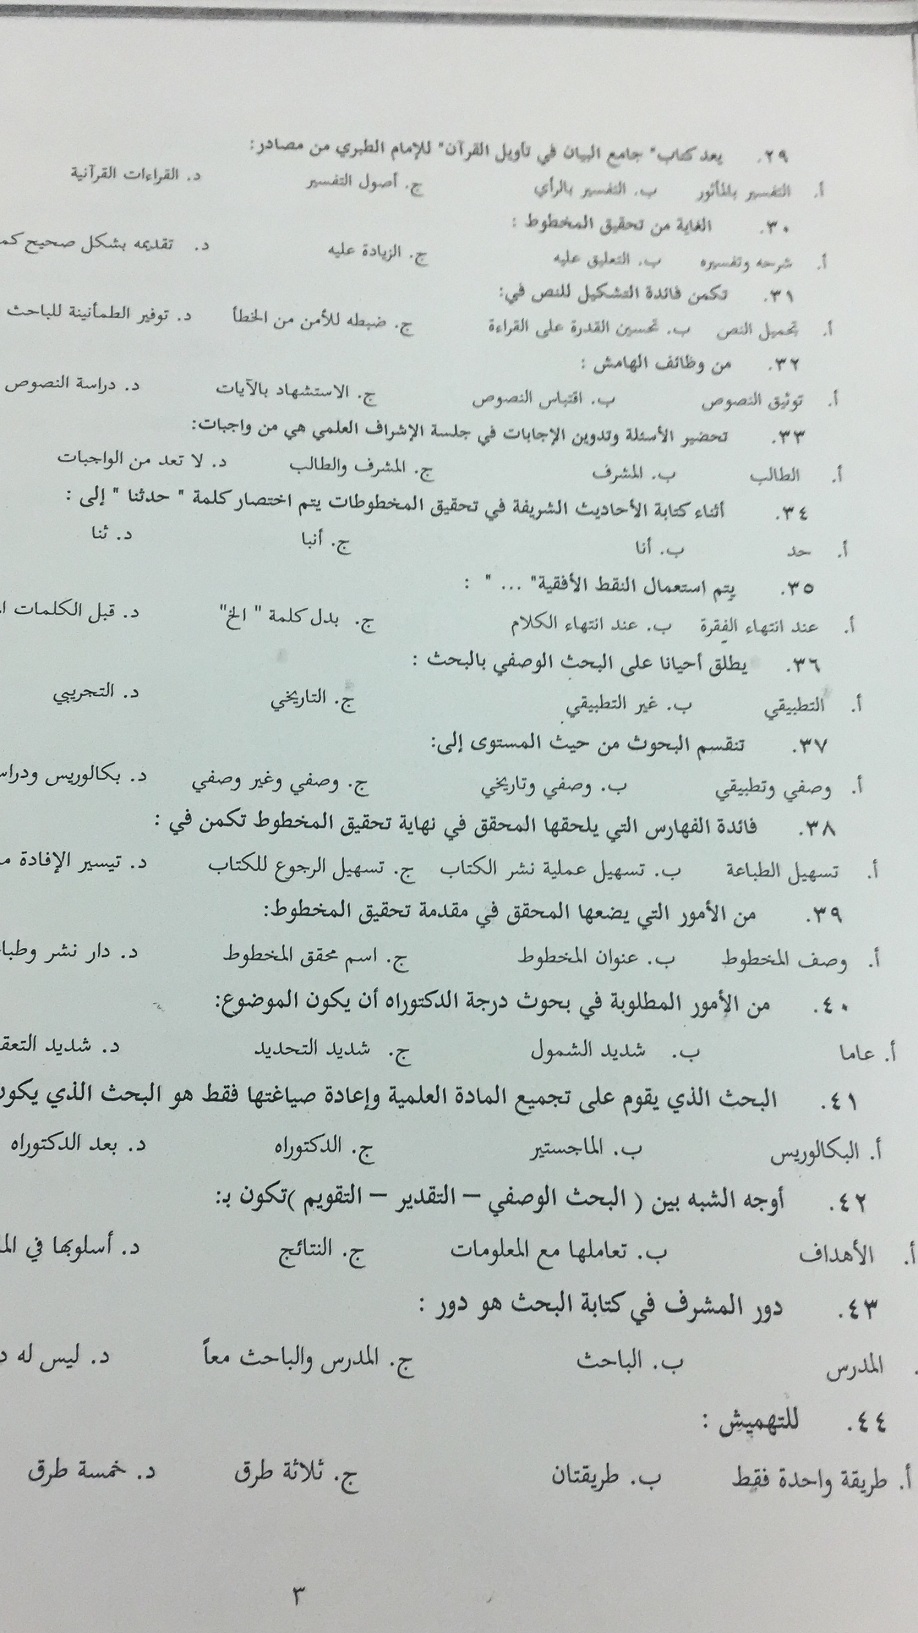 مناهج البحث في العلوم الاسلامية الفصل الاول 1438